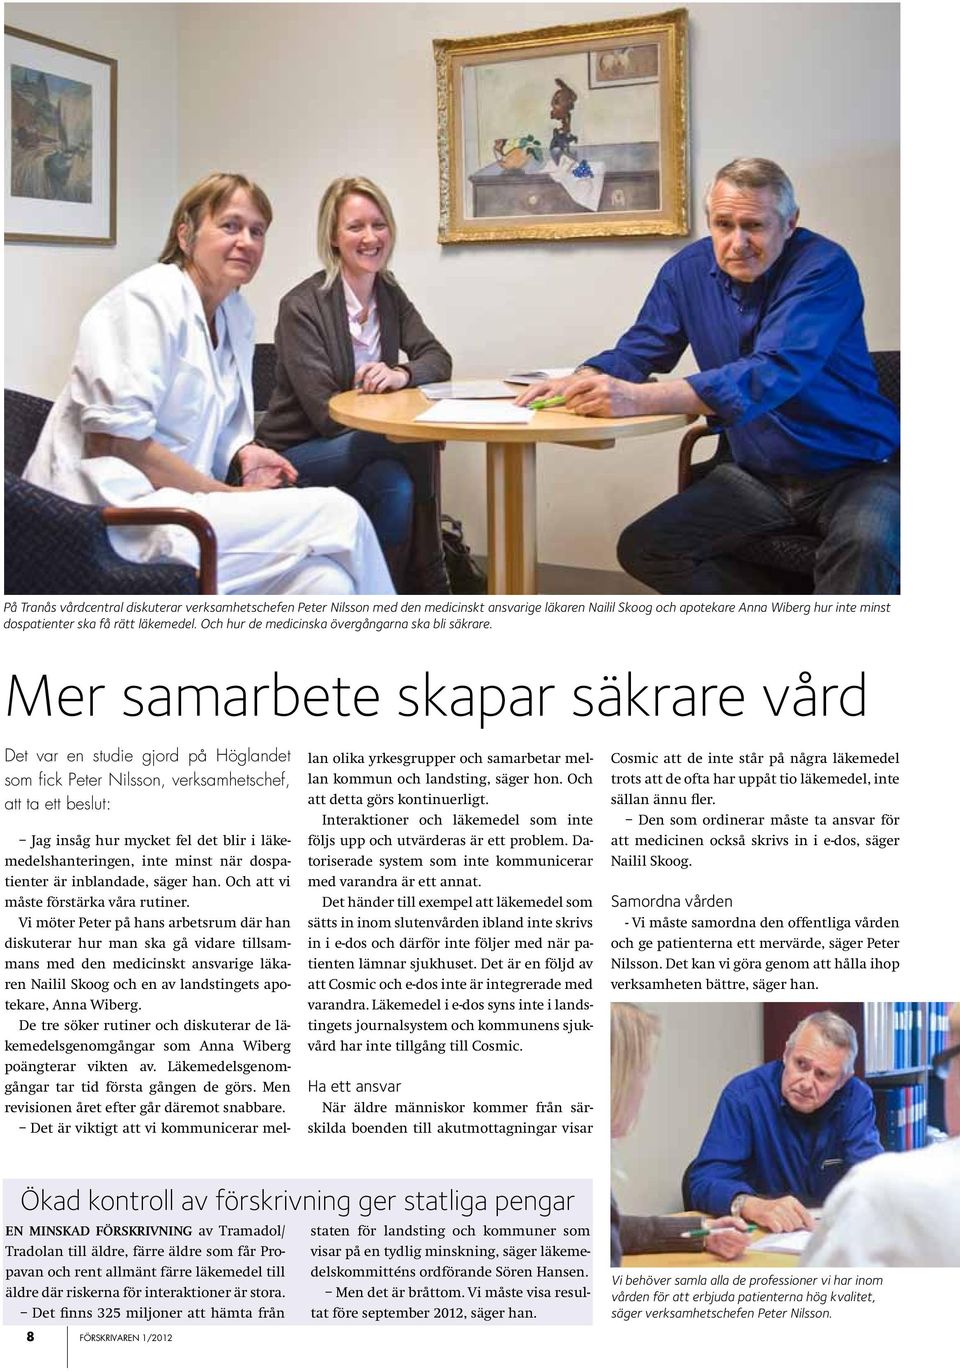 Mer samarbete skapar säkrare vård Det var en studie gjord på Höglandet som fick Peter Nilsson, verksamhetschef, att ta ett beslut: Jag insåg hur mycket fel det blir i läkemedelshanteringen, inte